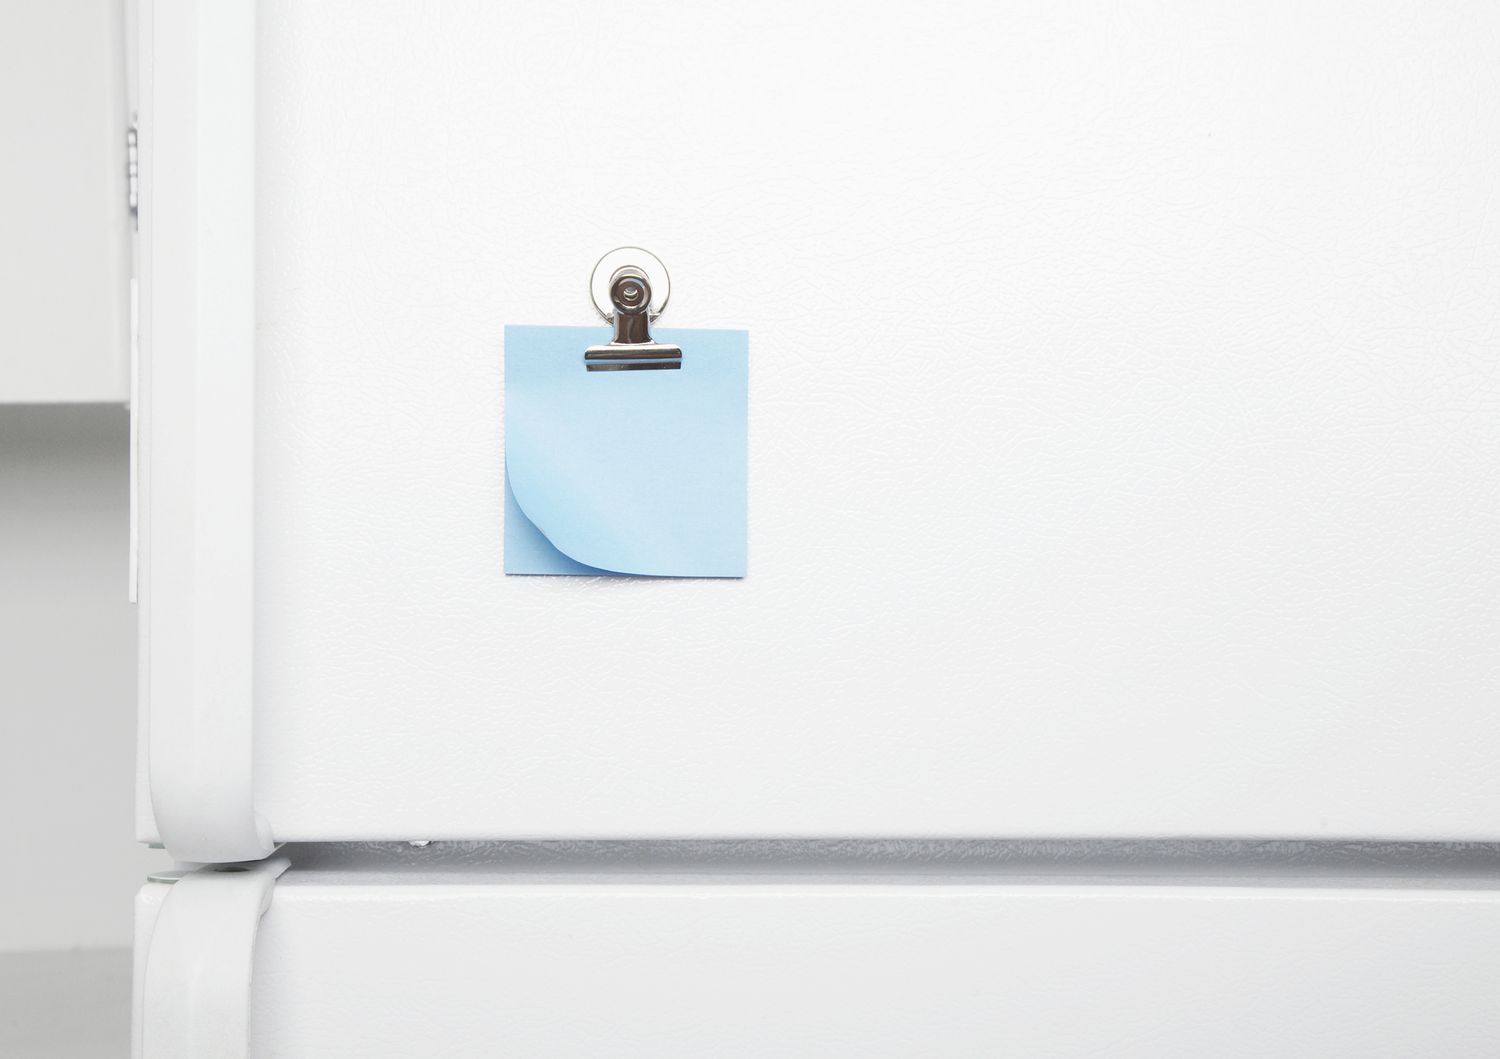 Extérieur de la porte du réfrigérateur avec note adhésive bleue.